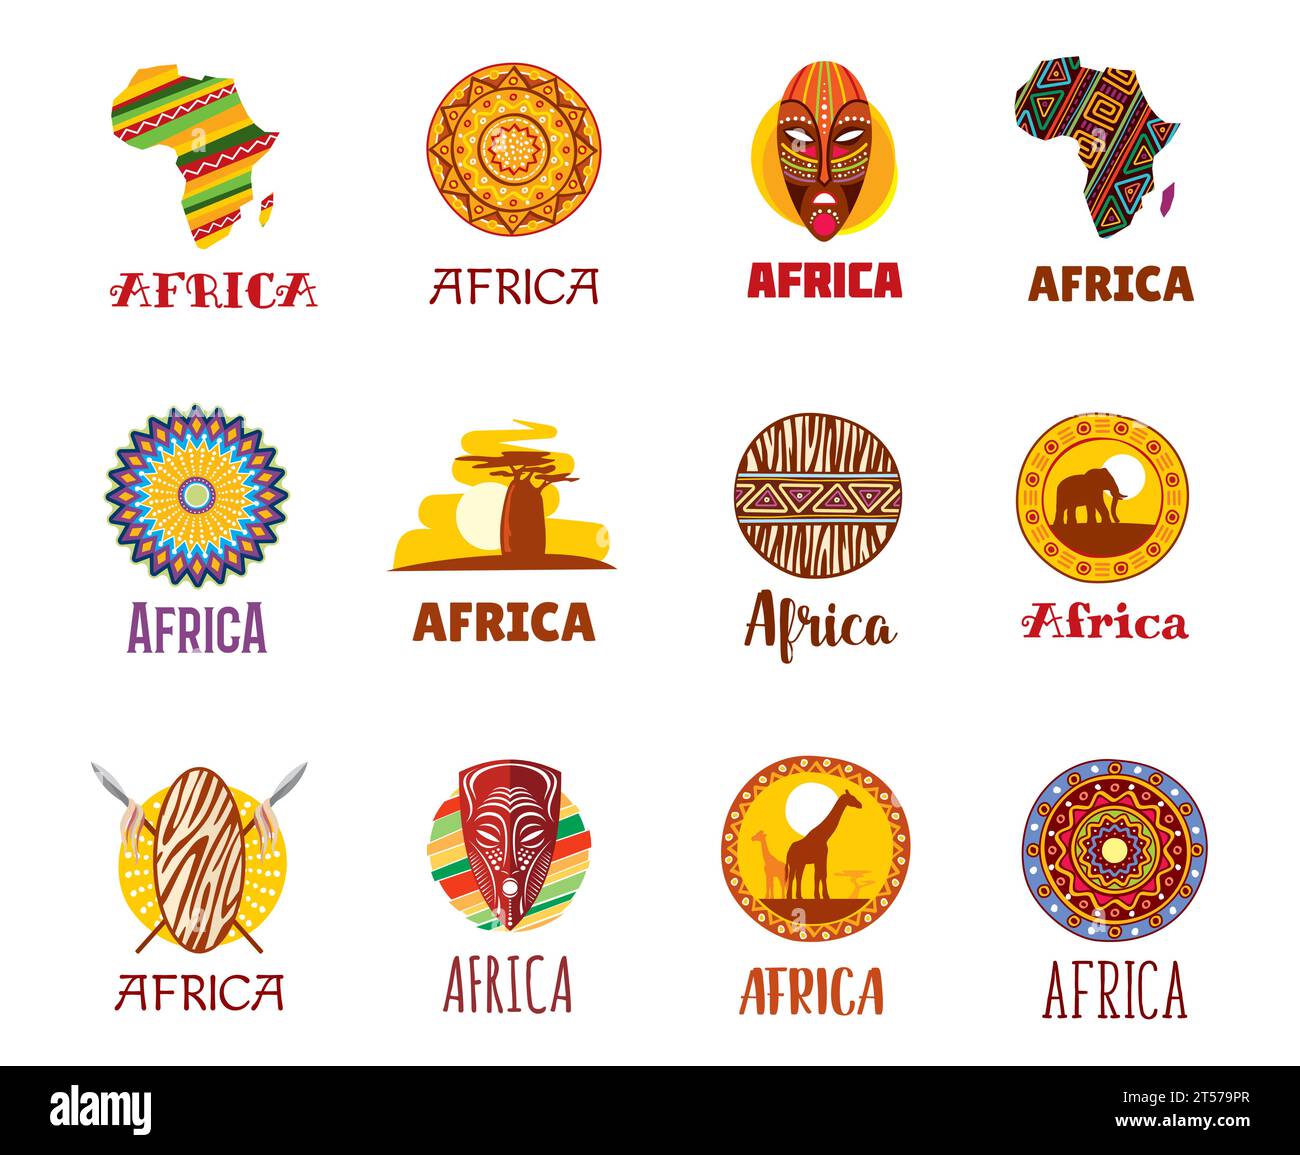 Icônes africaines, voyages africains, monuments touristiques et symboles vectoriels culturels. Ornement traditionnel africain, baobab de savane et masque tribal ethnique, girafe et éléphant sur le safari africain, icônes et signes Illustration de Vecteur